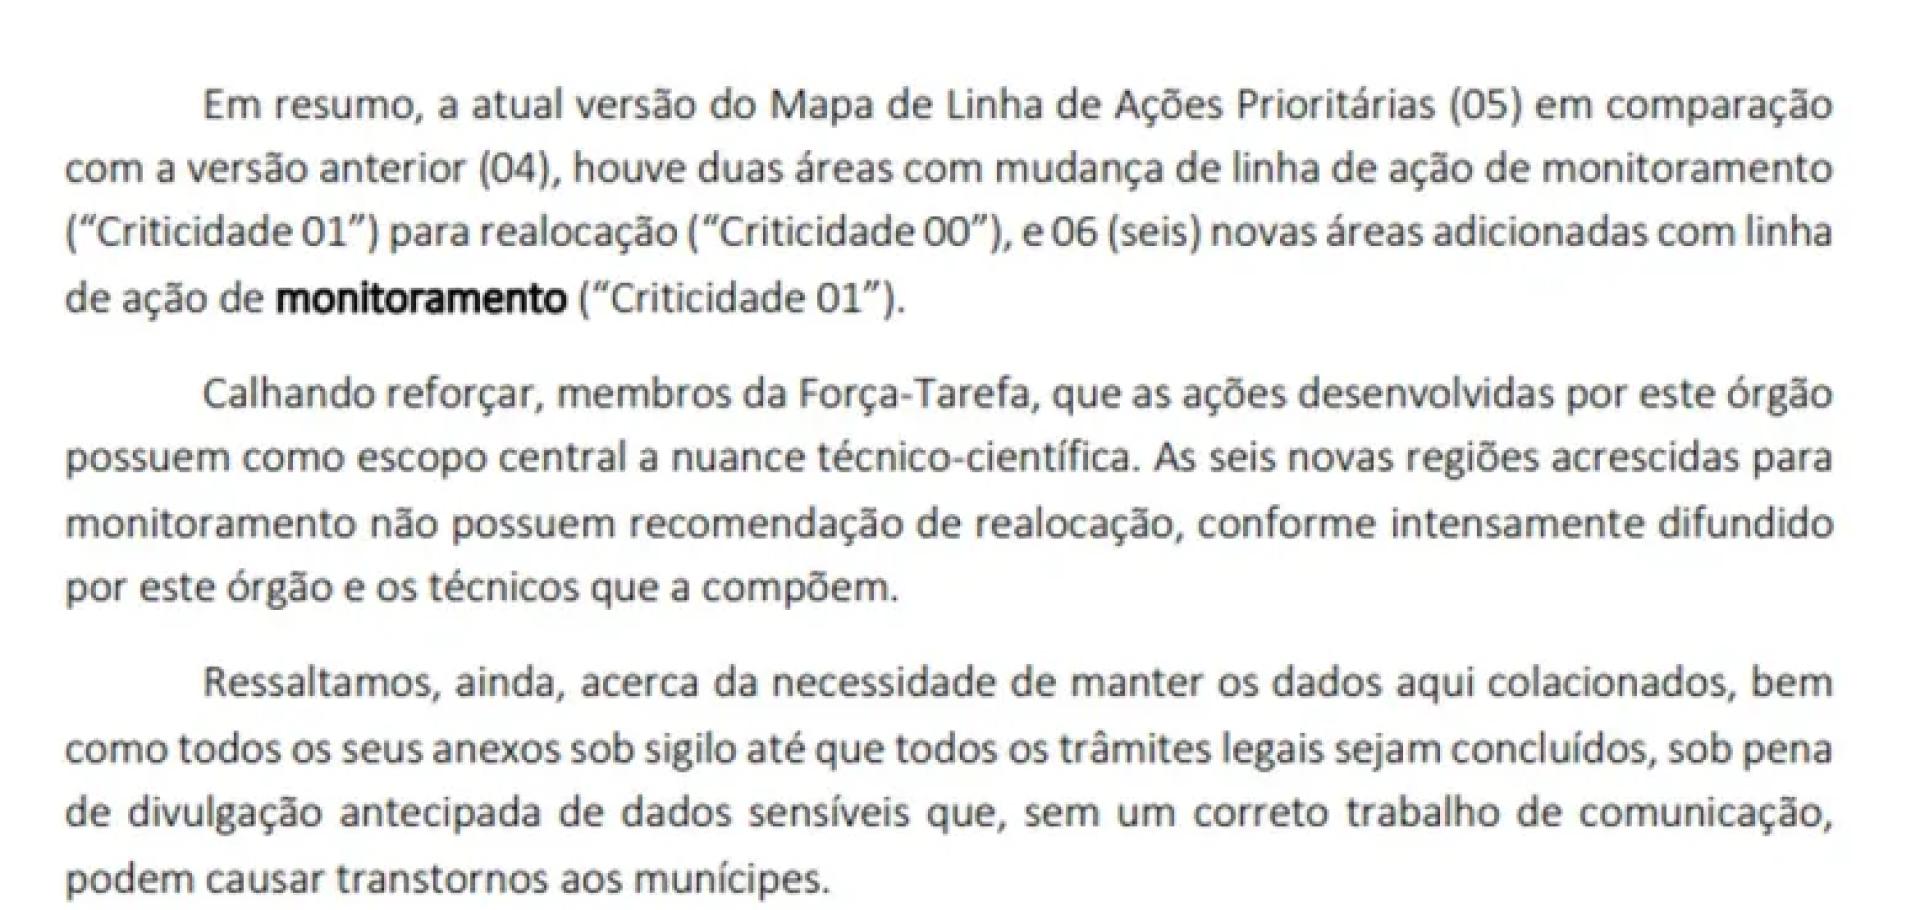 Em ofício, a prefeitura de Maceió explicou mudanças e pediu sigilo, alegando que a divulgação antecipada de "dados sensíveis" poderia causar transtornos à população(Foto: O Globo/Reprodução)